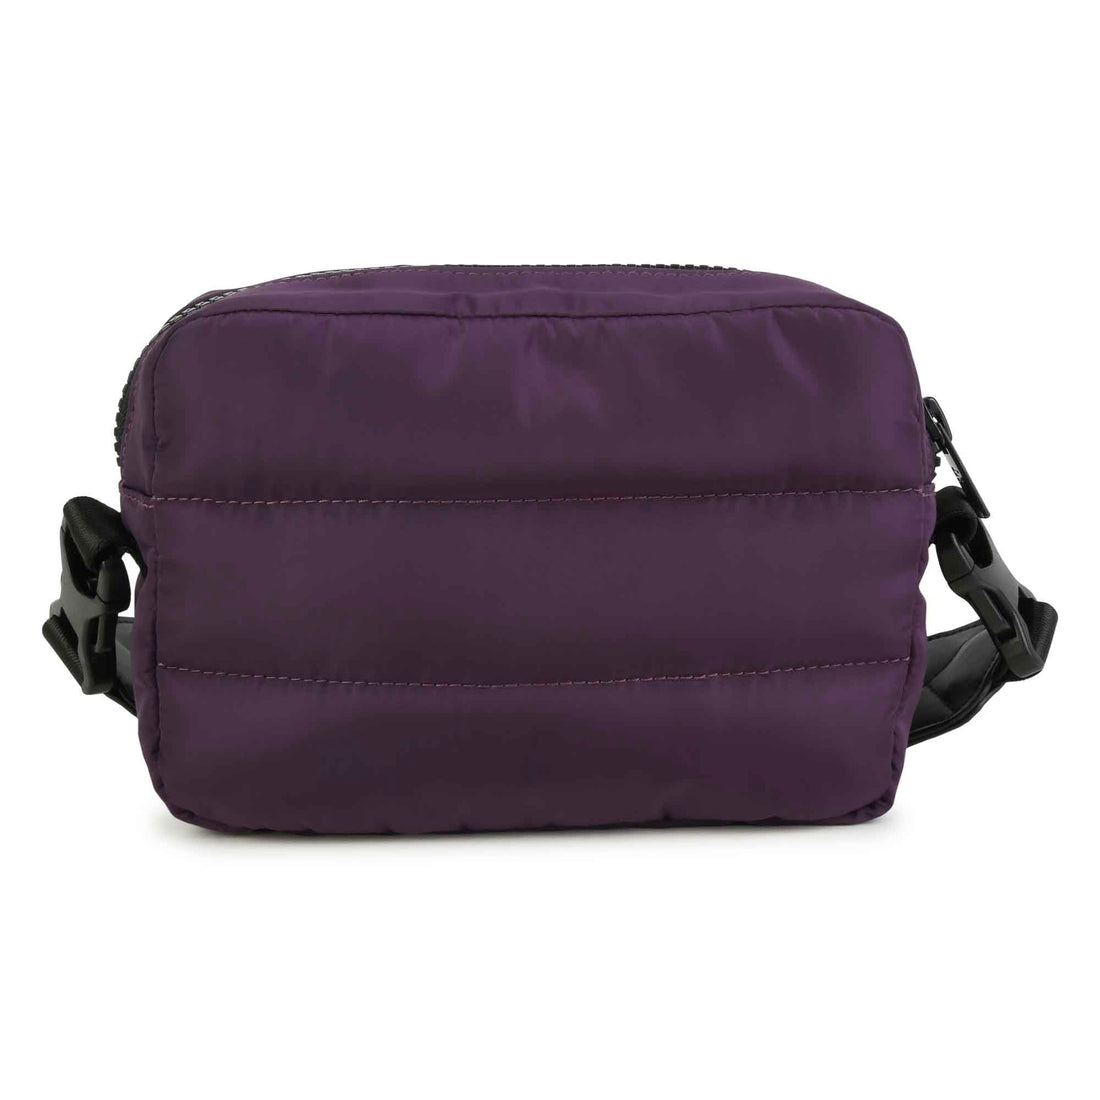 Dkny Handle Bag Style: D30573